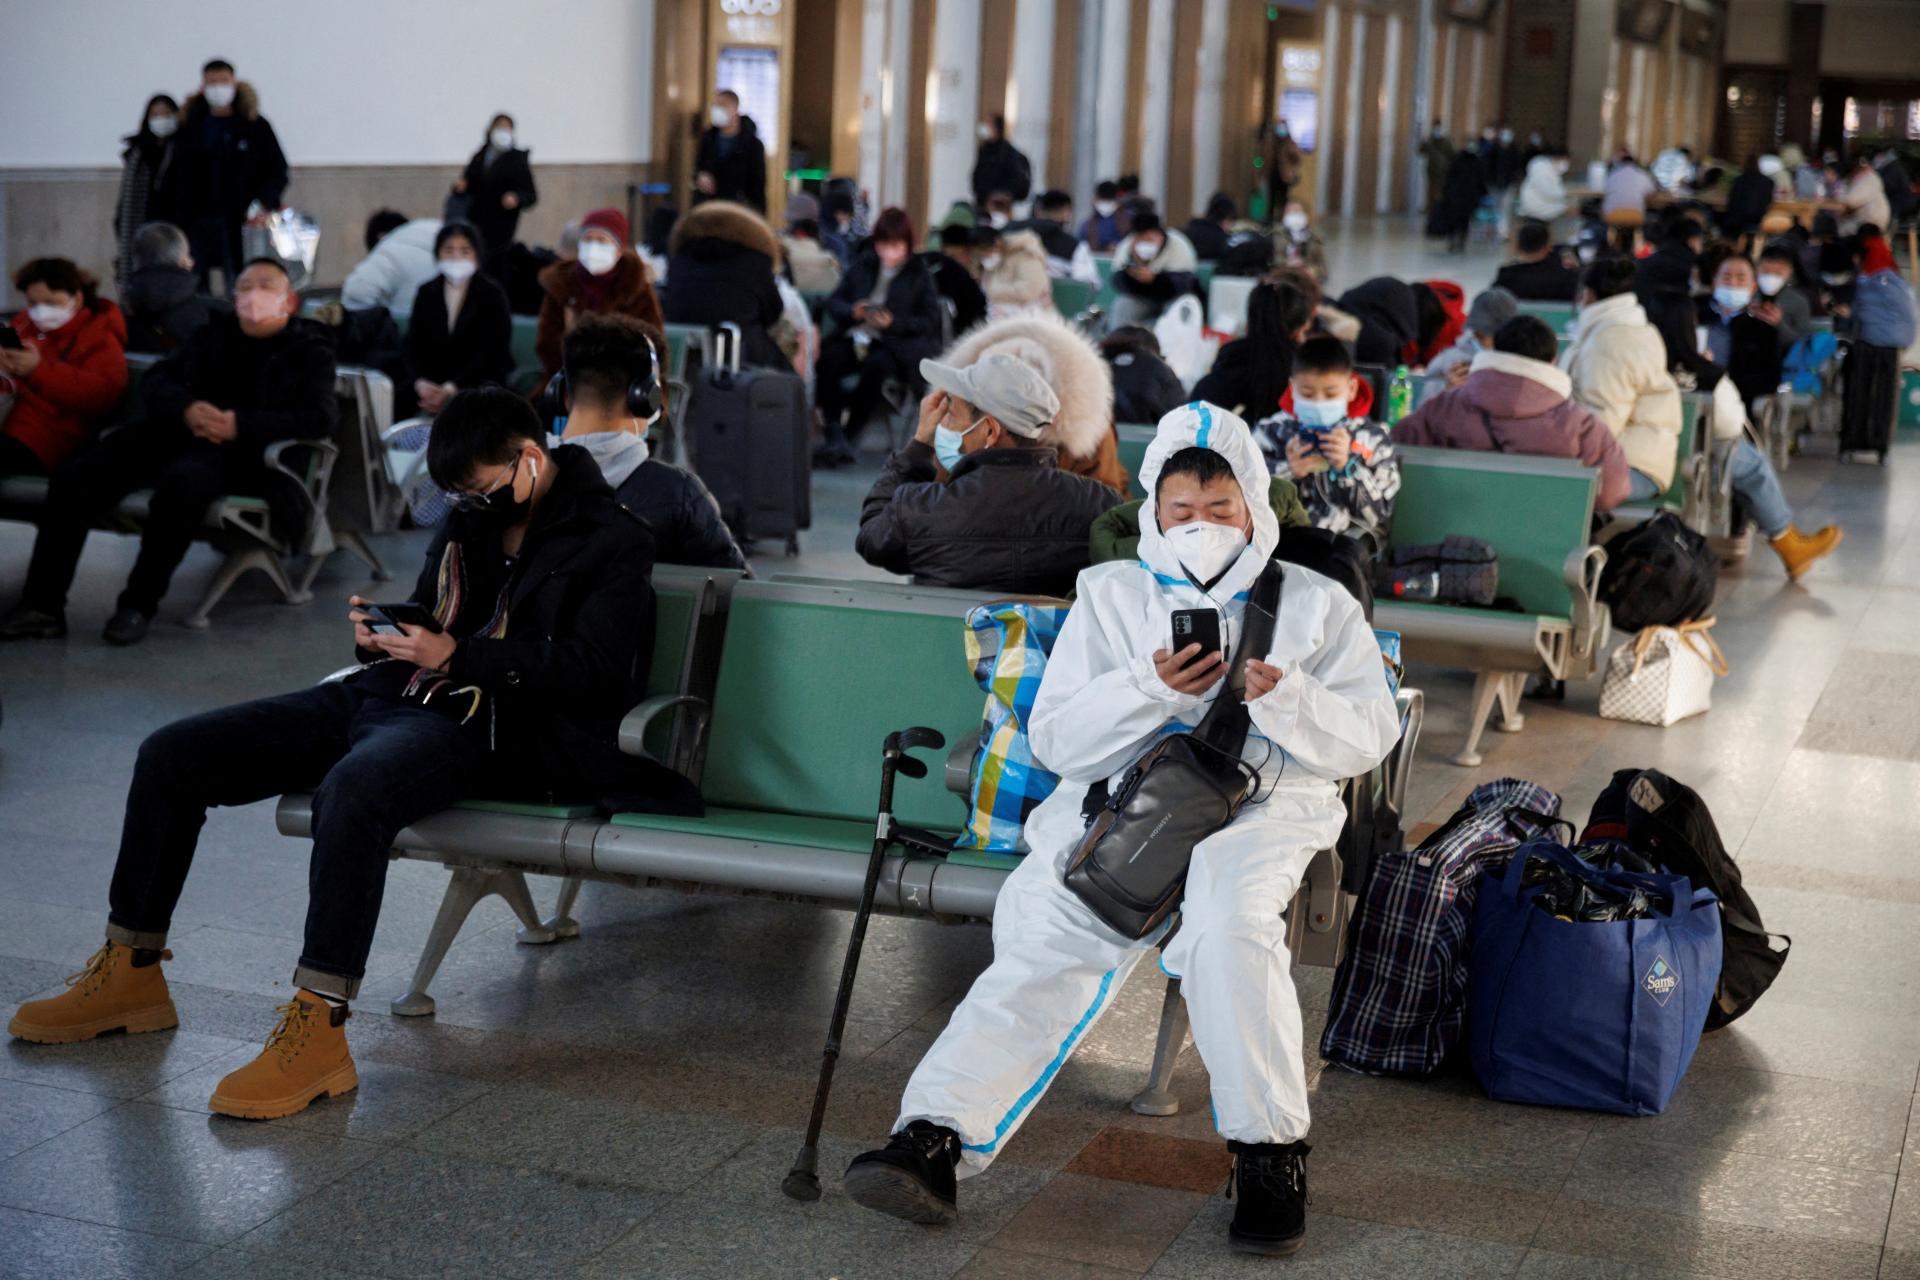 Pandémiu koronavírusu zrejme spôsobil únik z vládneho laboratória v Číne, hovorí riaditeľ FBI